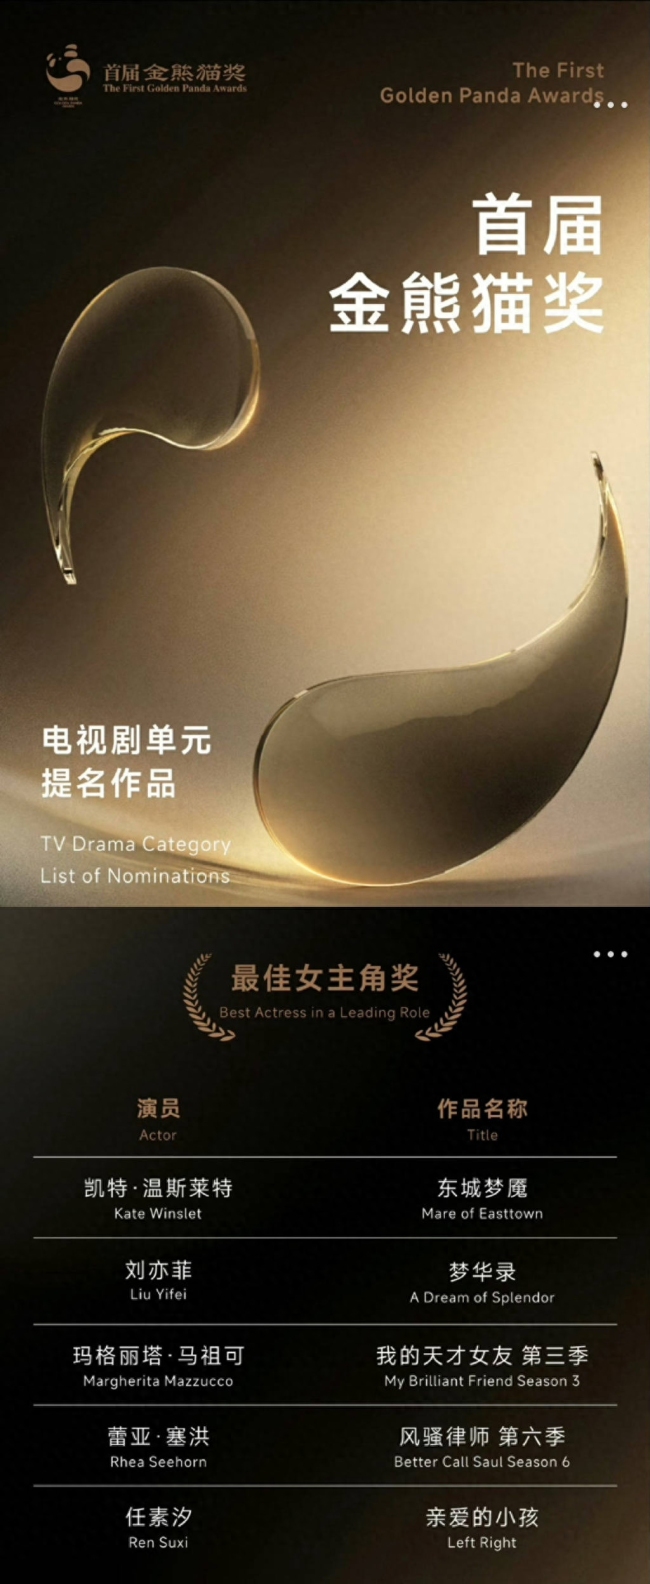 劉亦菲憑借《夢華錄》提名金熊貓獎最佳女主角